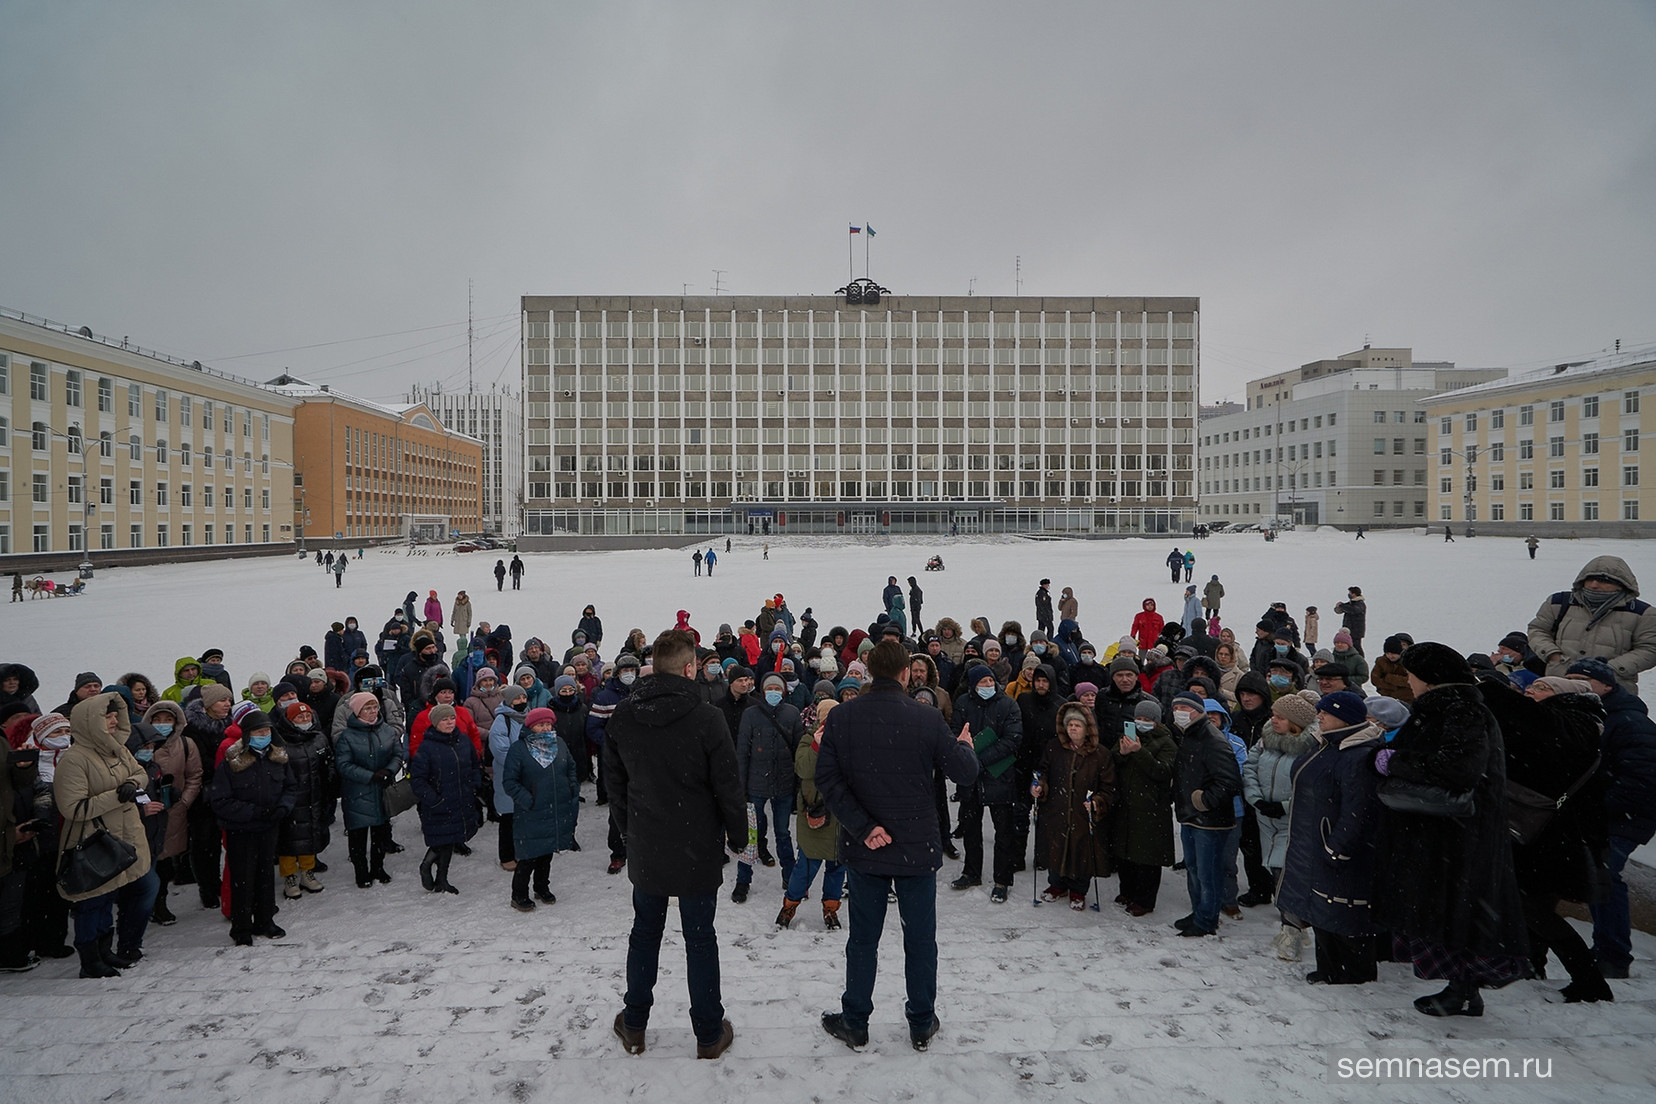 Депутат Олег Михайлов провел встречу с жителями против законопроектов Госдумы
